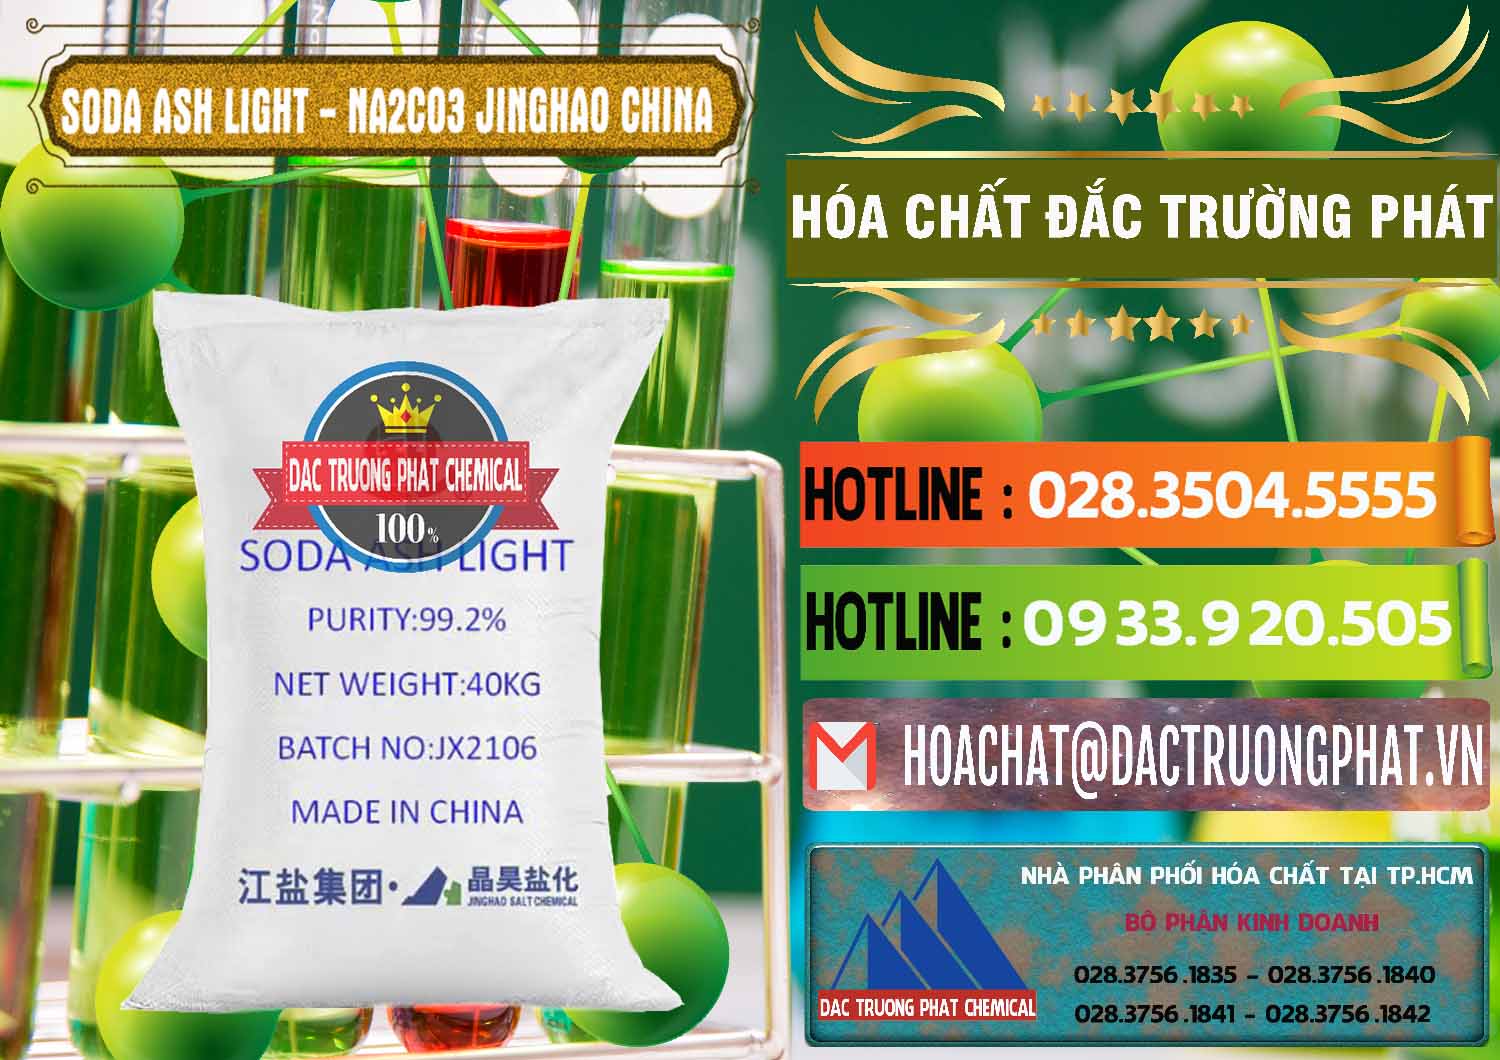 Bán & cung ứng Soda Ash Light - NA2CO3 Jinghao Trung Quốc China - 0339 - Nơi chuyên phân phối ( cung ứng ) hóa chất tại TP.HCM - cungcaphoachat.com.vn